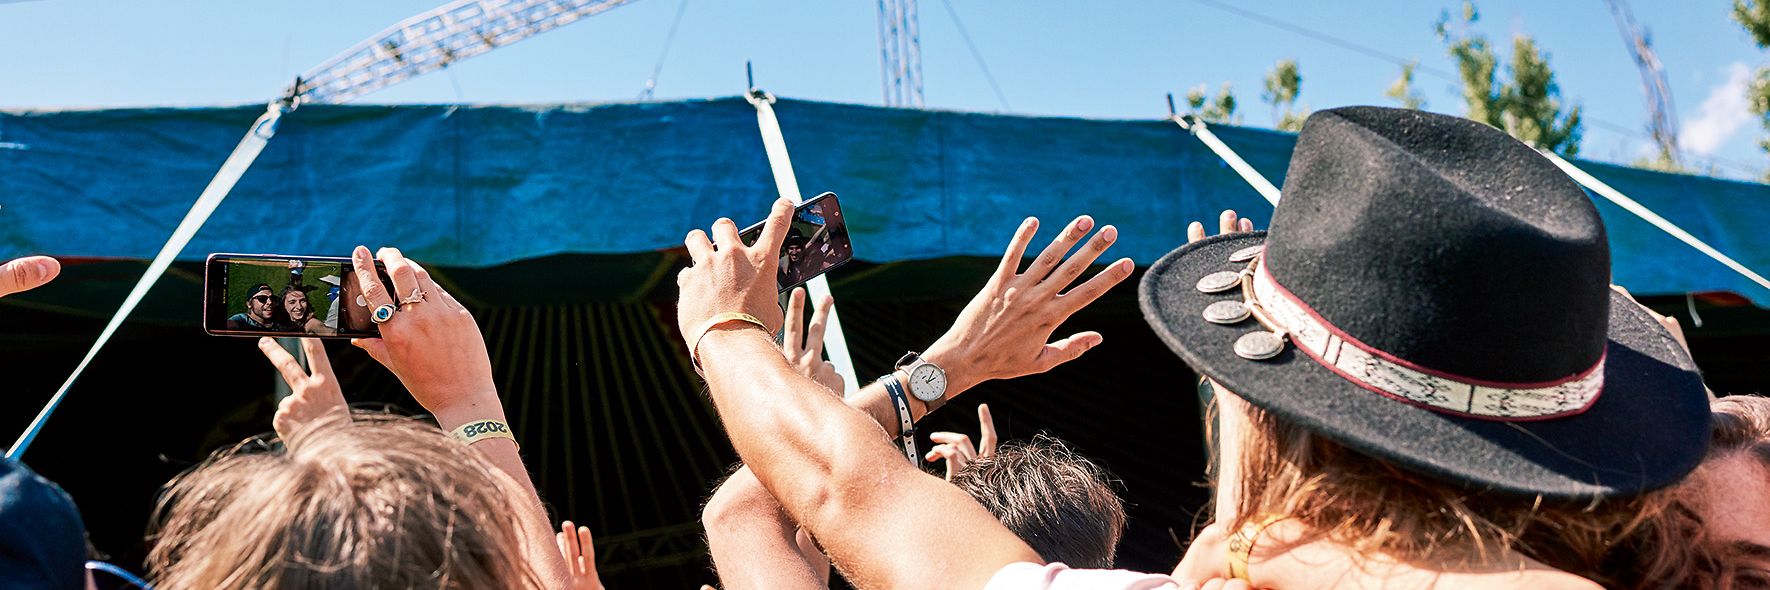 Viele junge Menschen strecken Ihre Handy in die Luft und sind vermutlich auf einem Open Air Konzert.